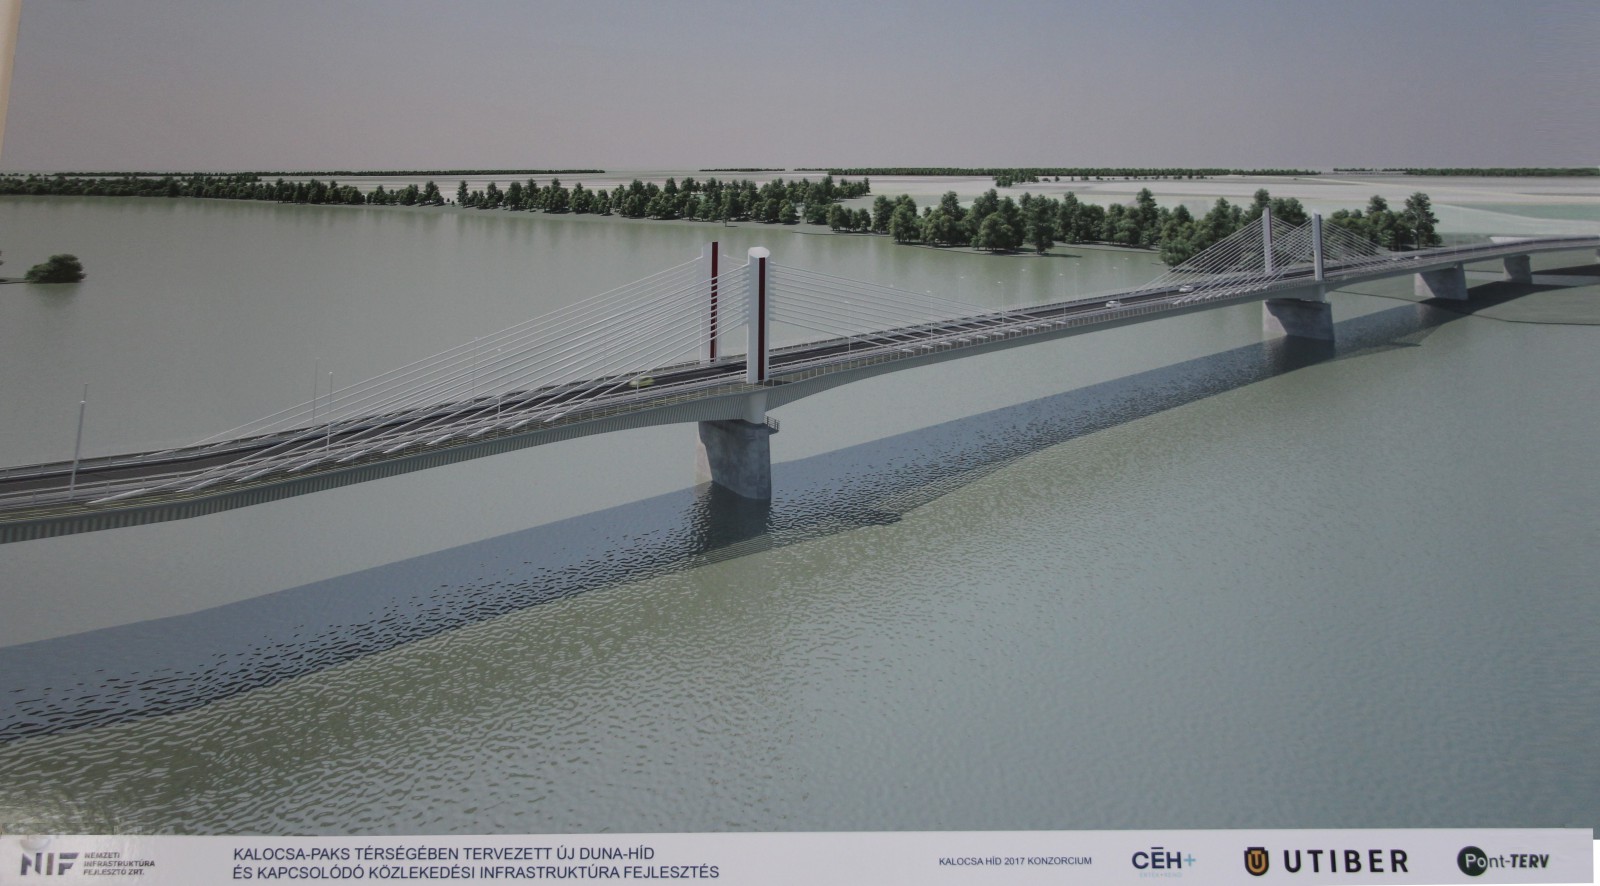 Kezdi felvenni végső formáját a Kalocsa-Paks Duna-híd